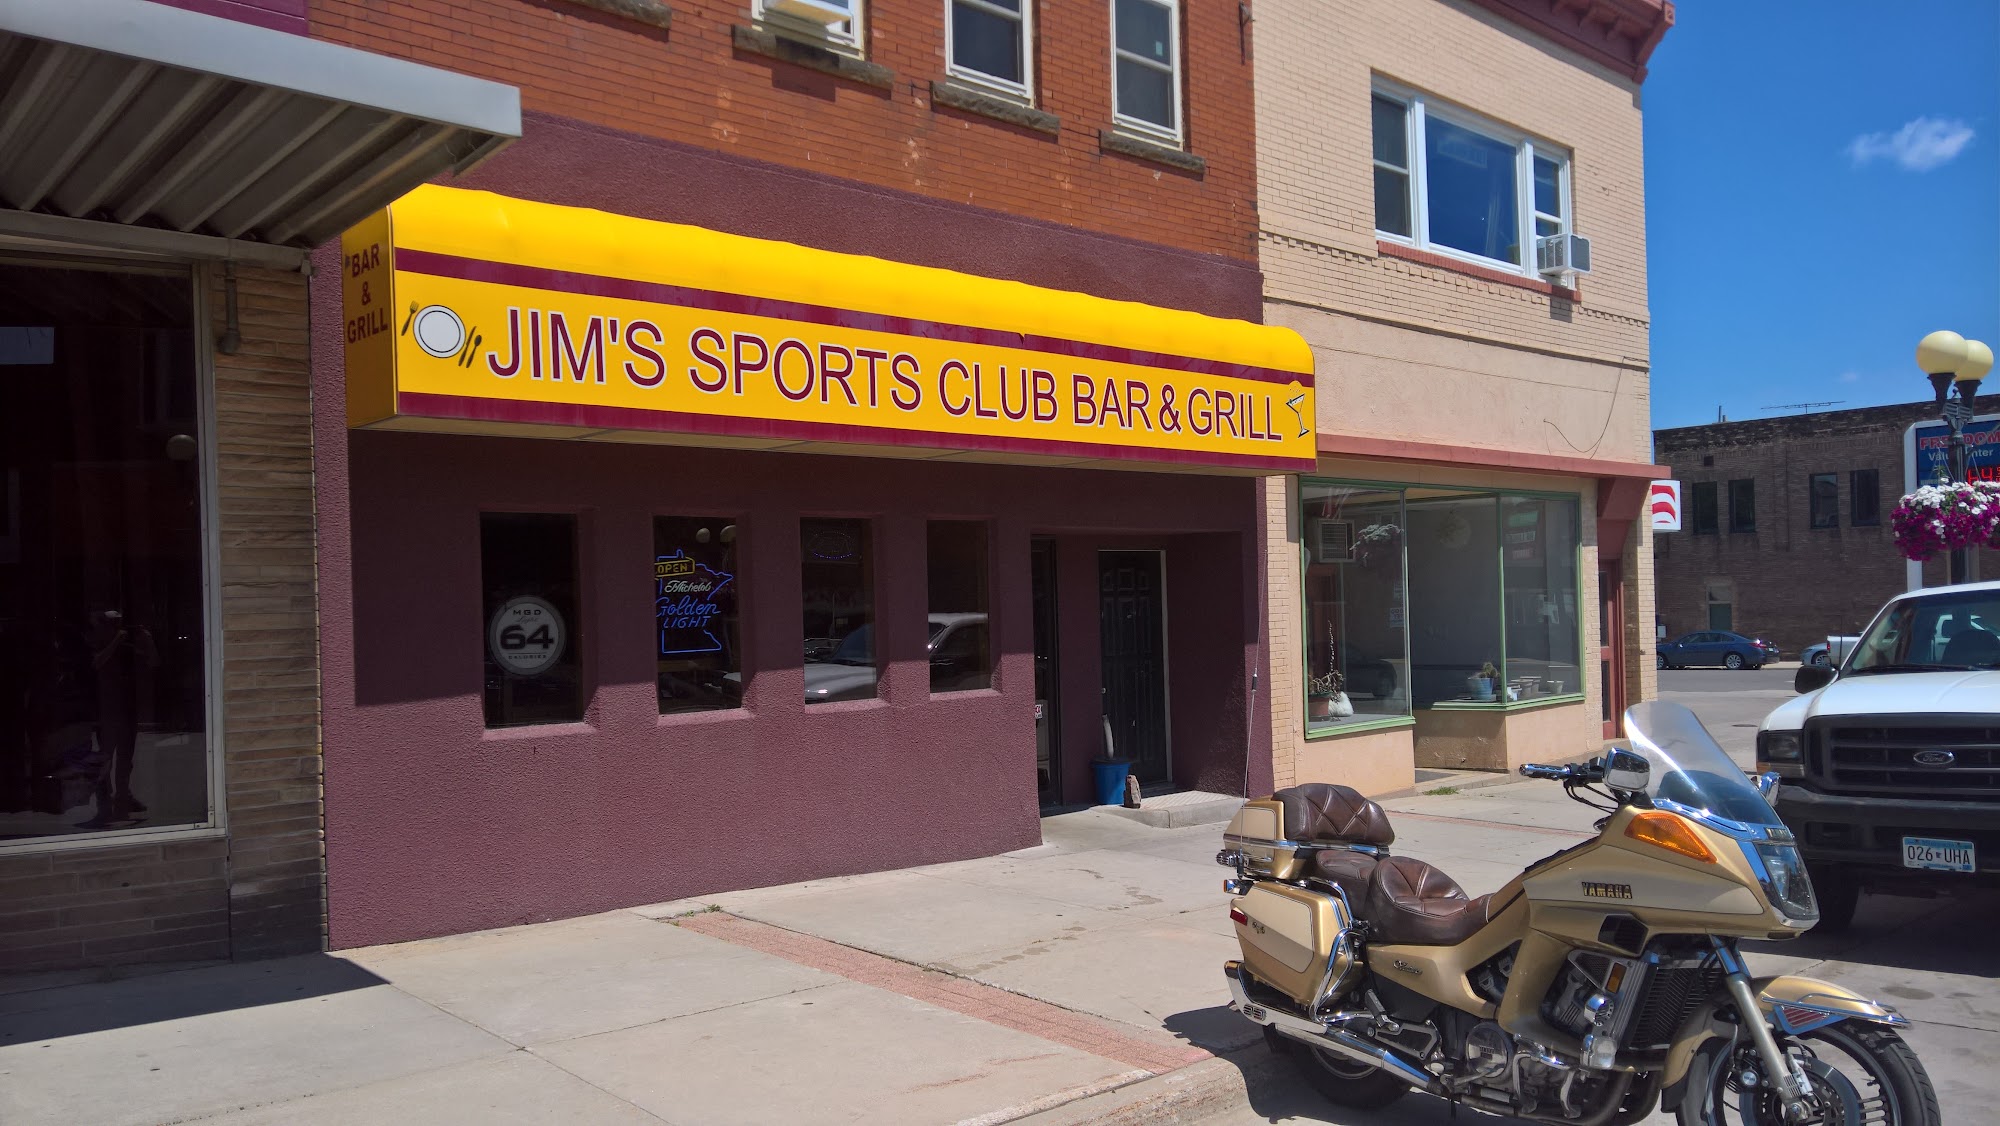 Jim's Sports Club Bar & Grill